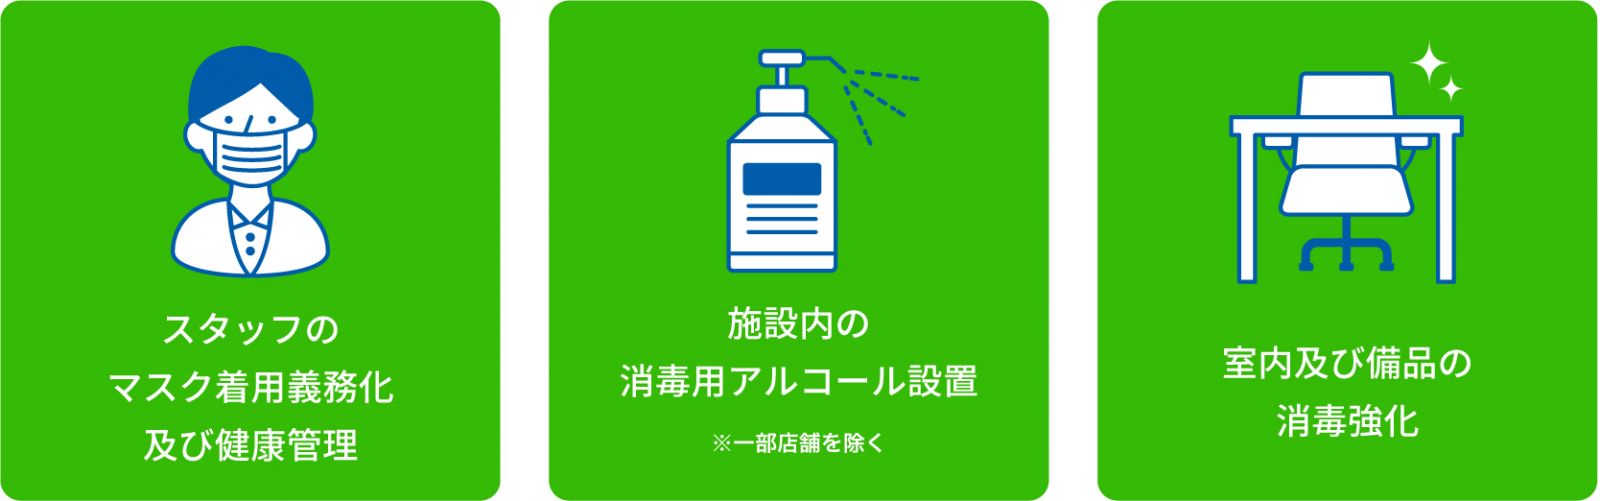 日本会議室のコロナ感染予防策